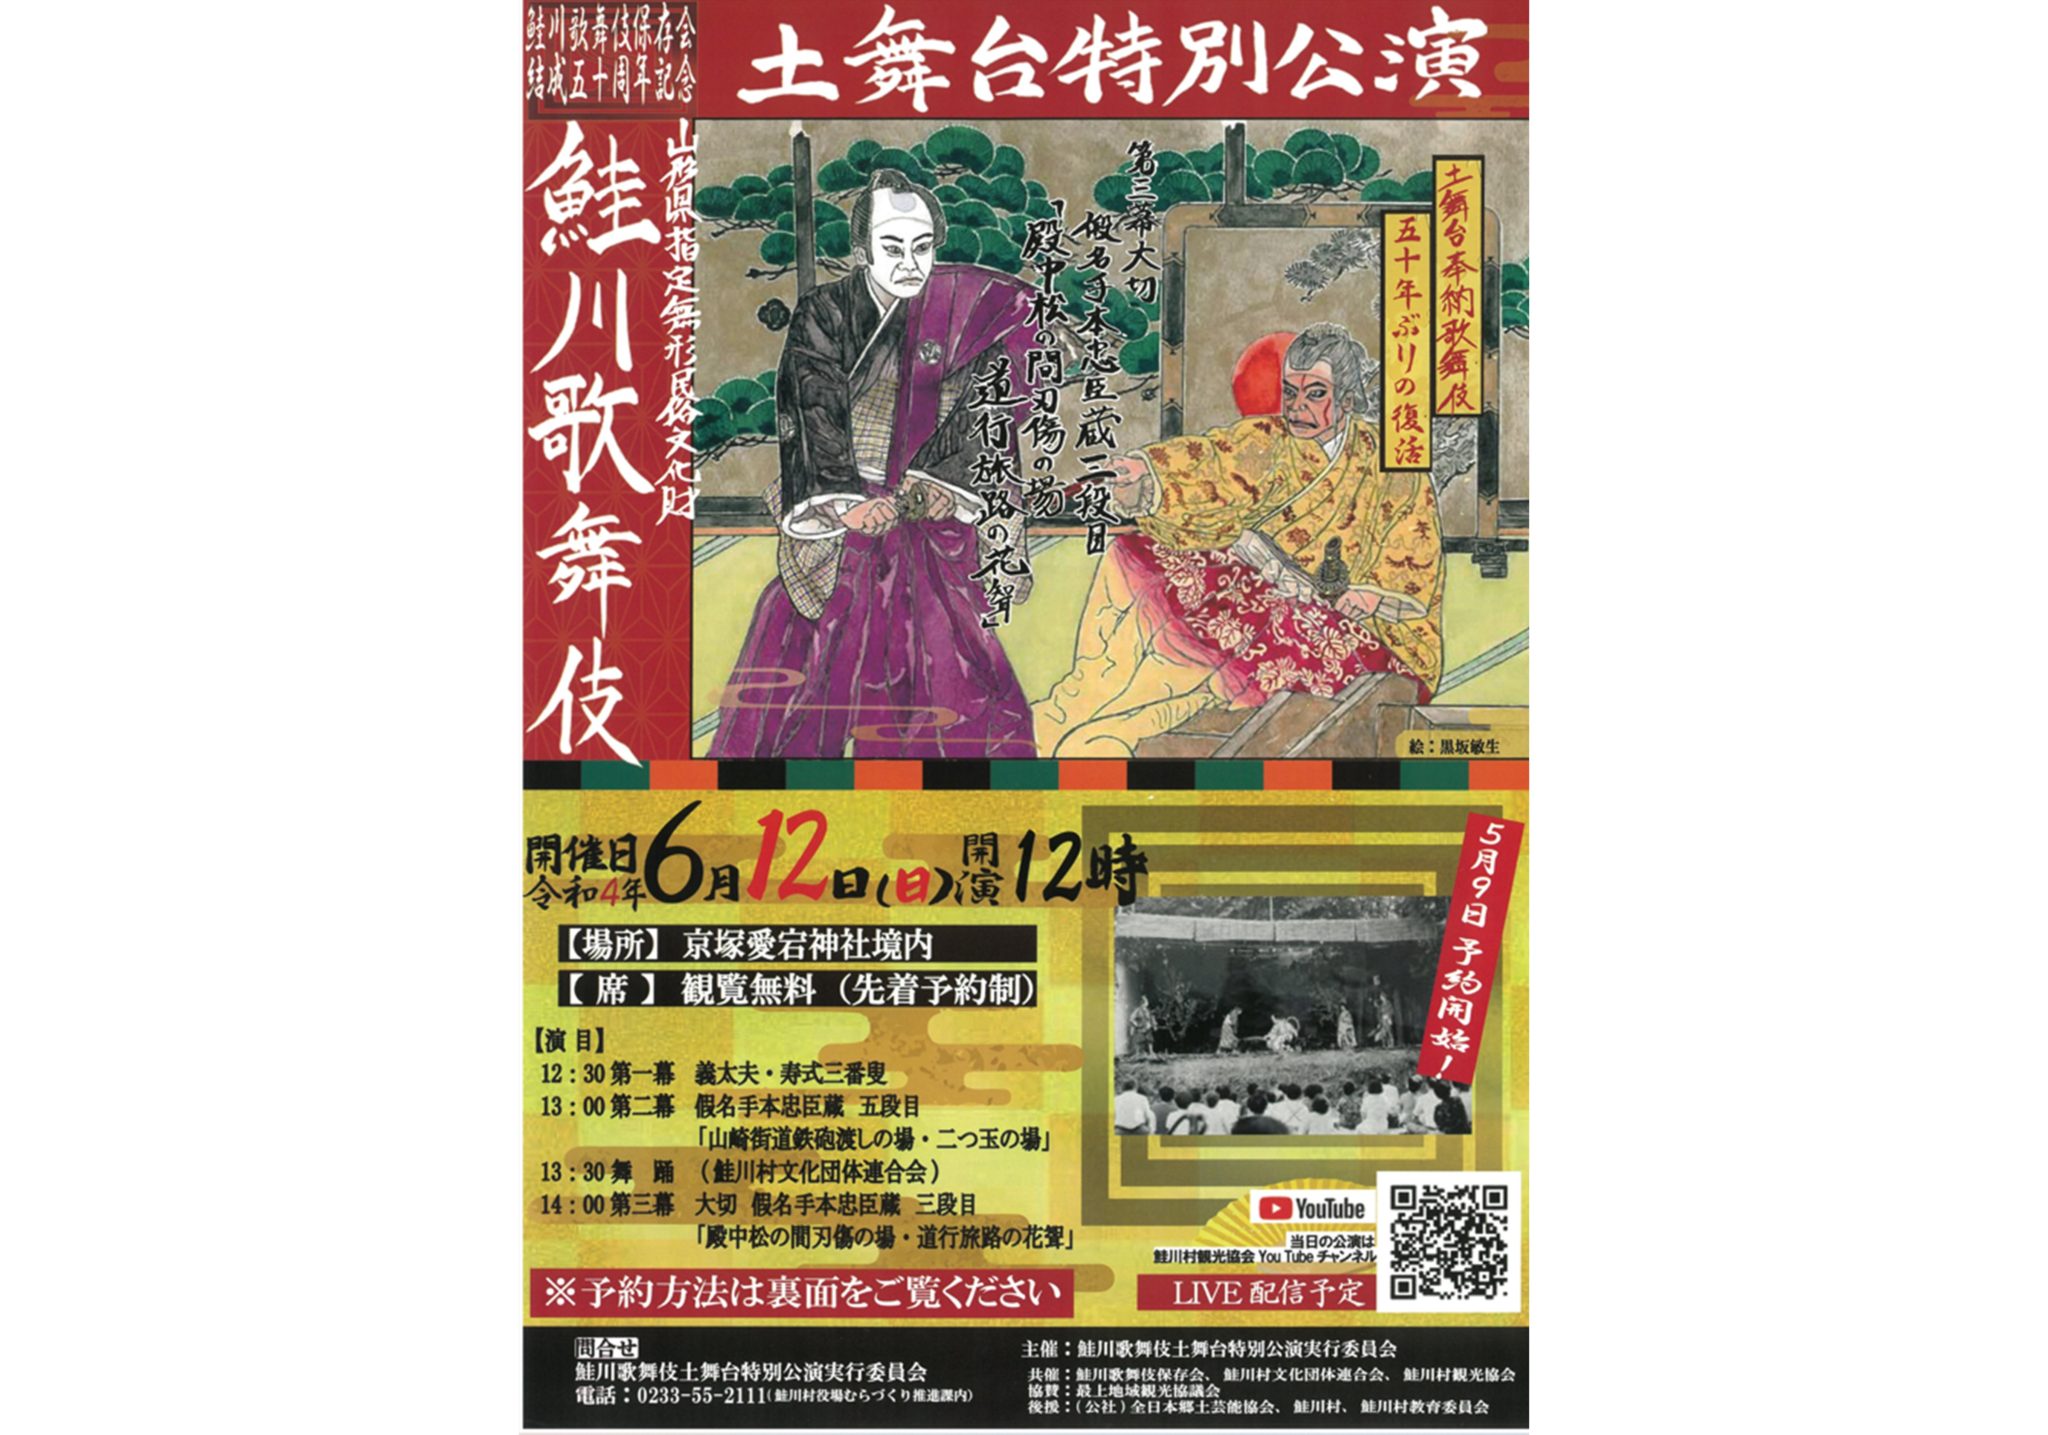 鮭川歌舞伎 土舞台特別公演